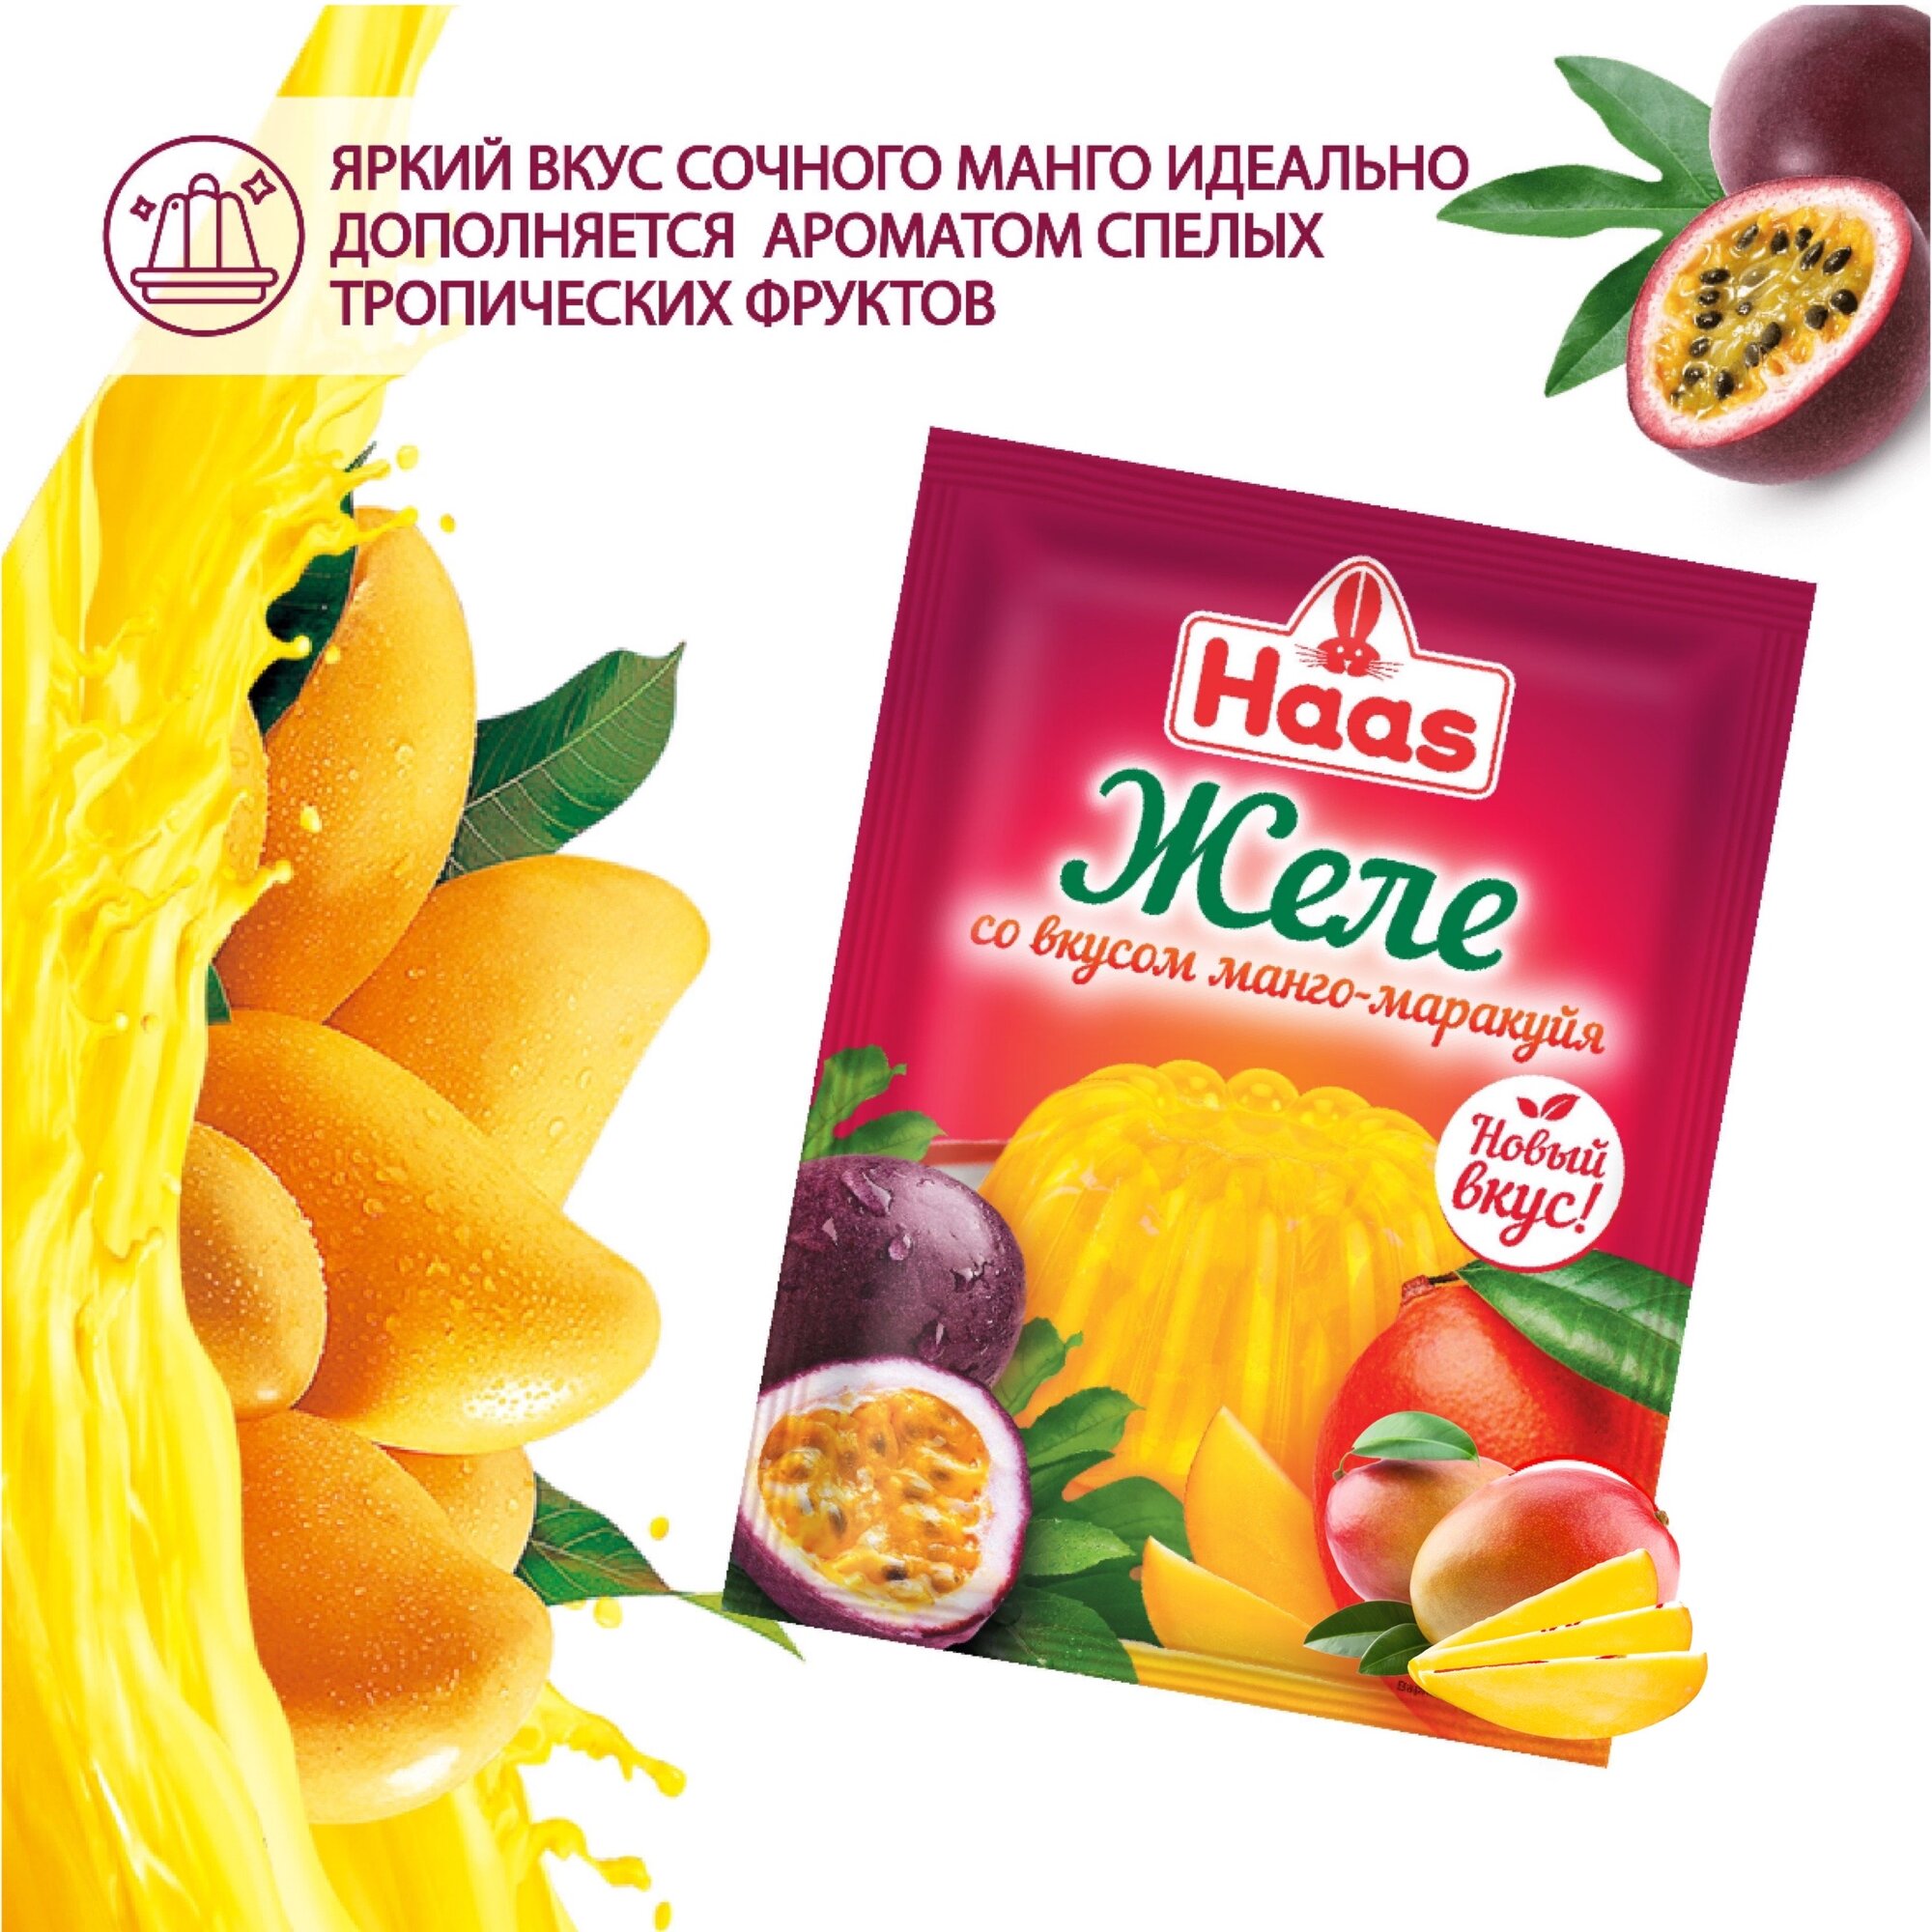 Желе Haas, быстрый десерт со вкусом манго - маракуйя и с витамином С, 50 г